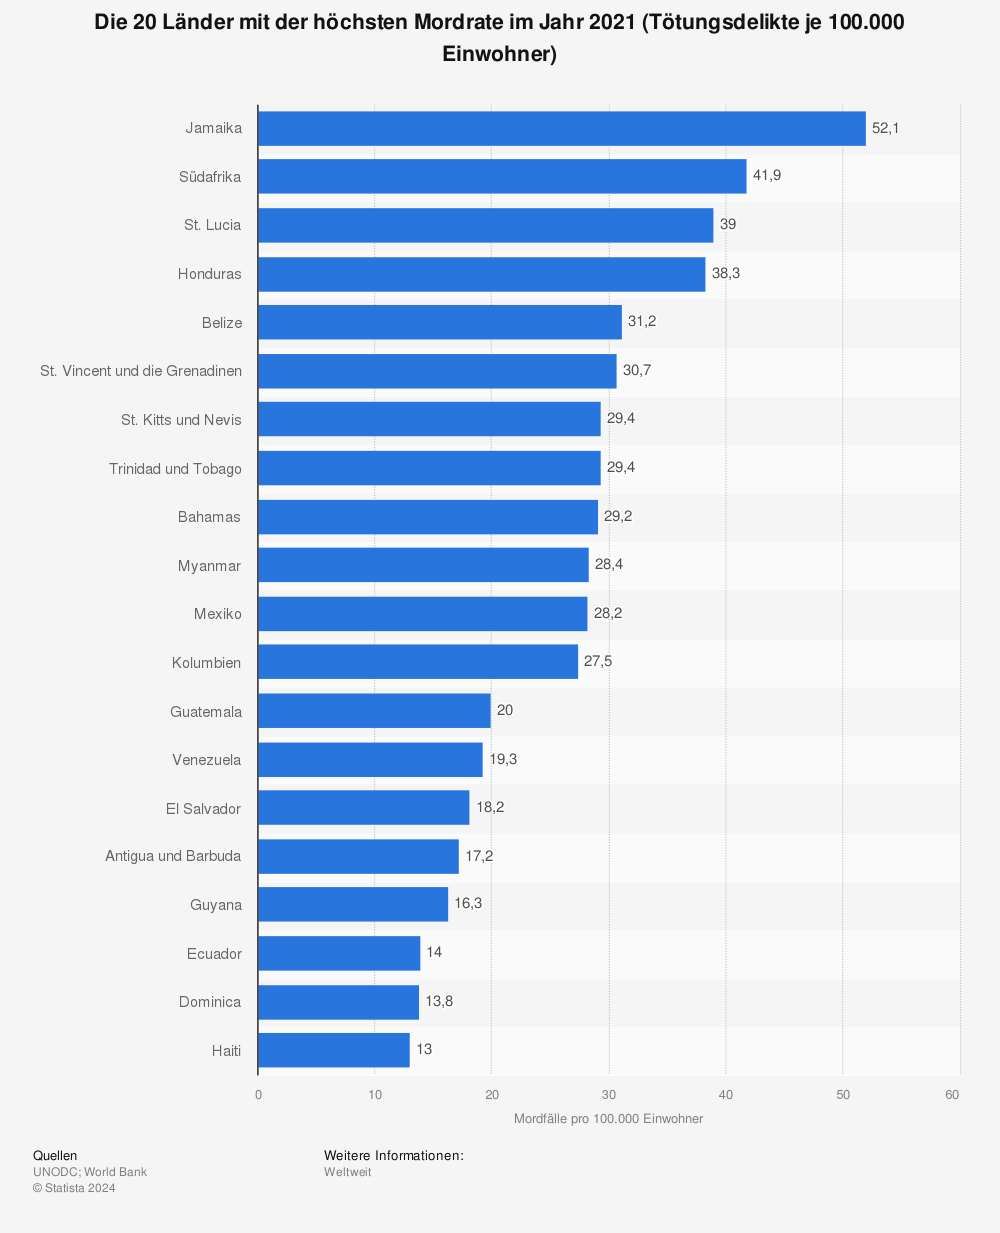 Statistik: Ranking der 20 Länder mit den meisten Mordfällen pro 100.000 Einwohner (im Zeitraum 2013 bis 2018*) | Statista